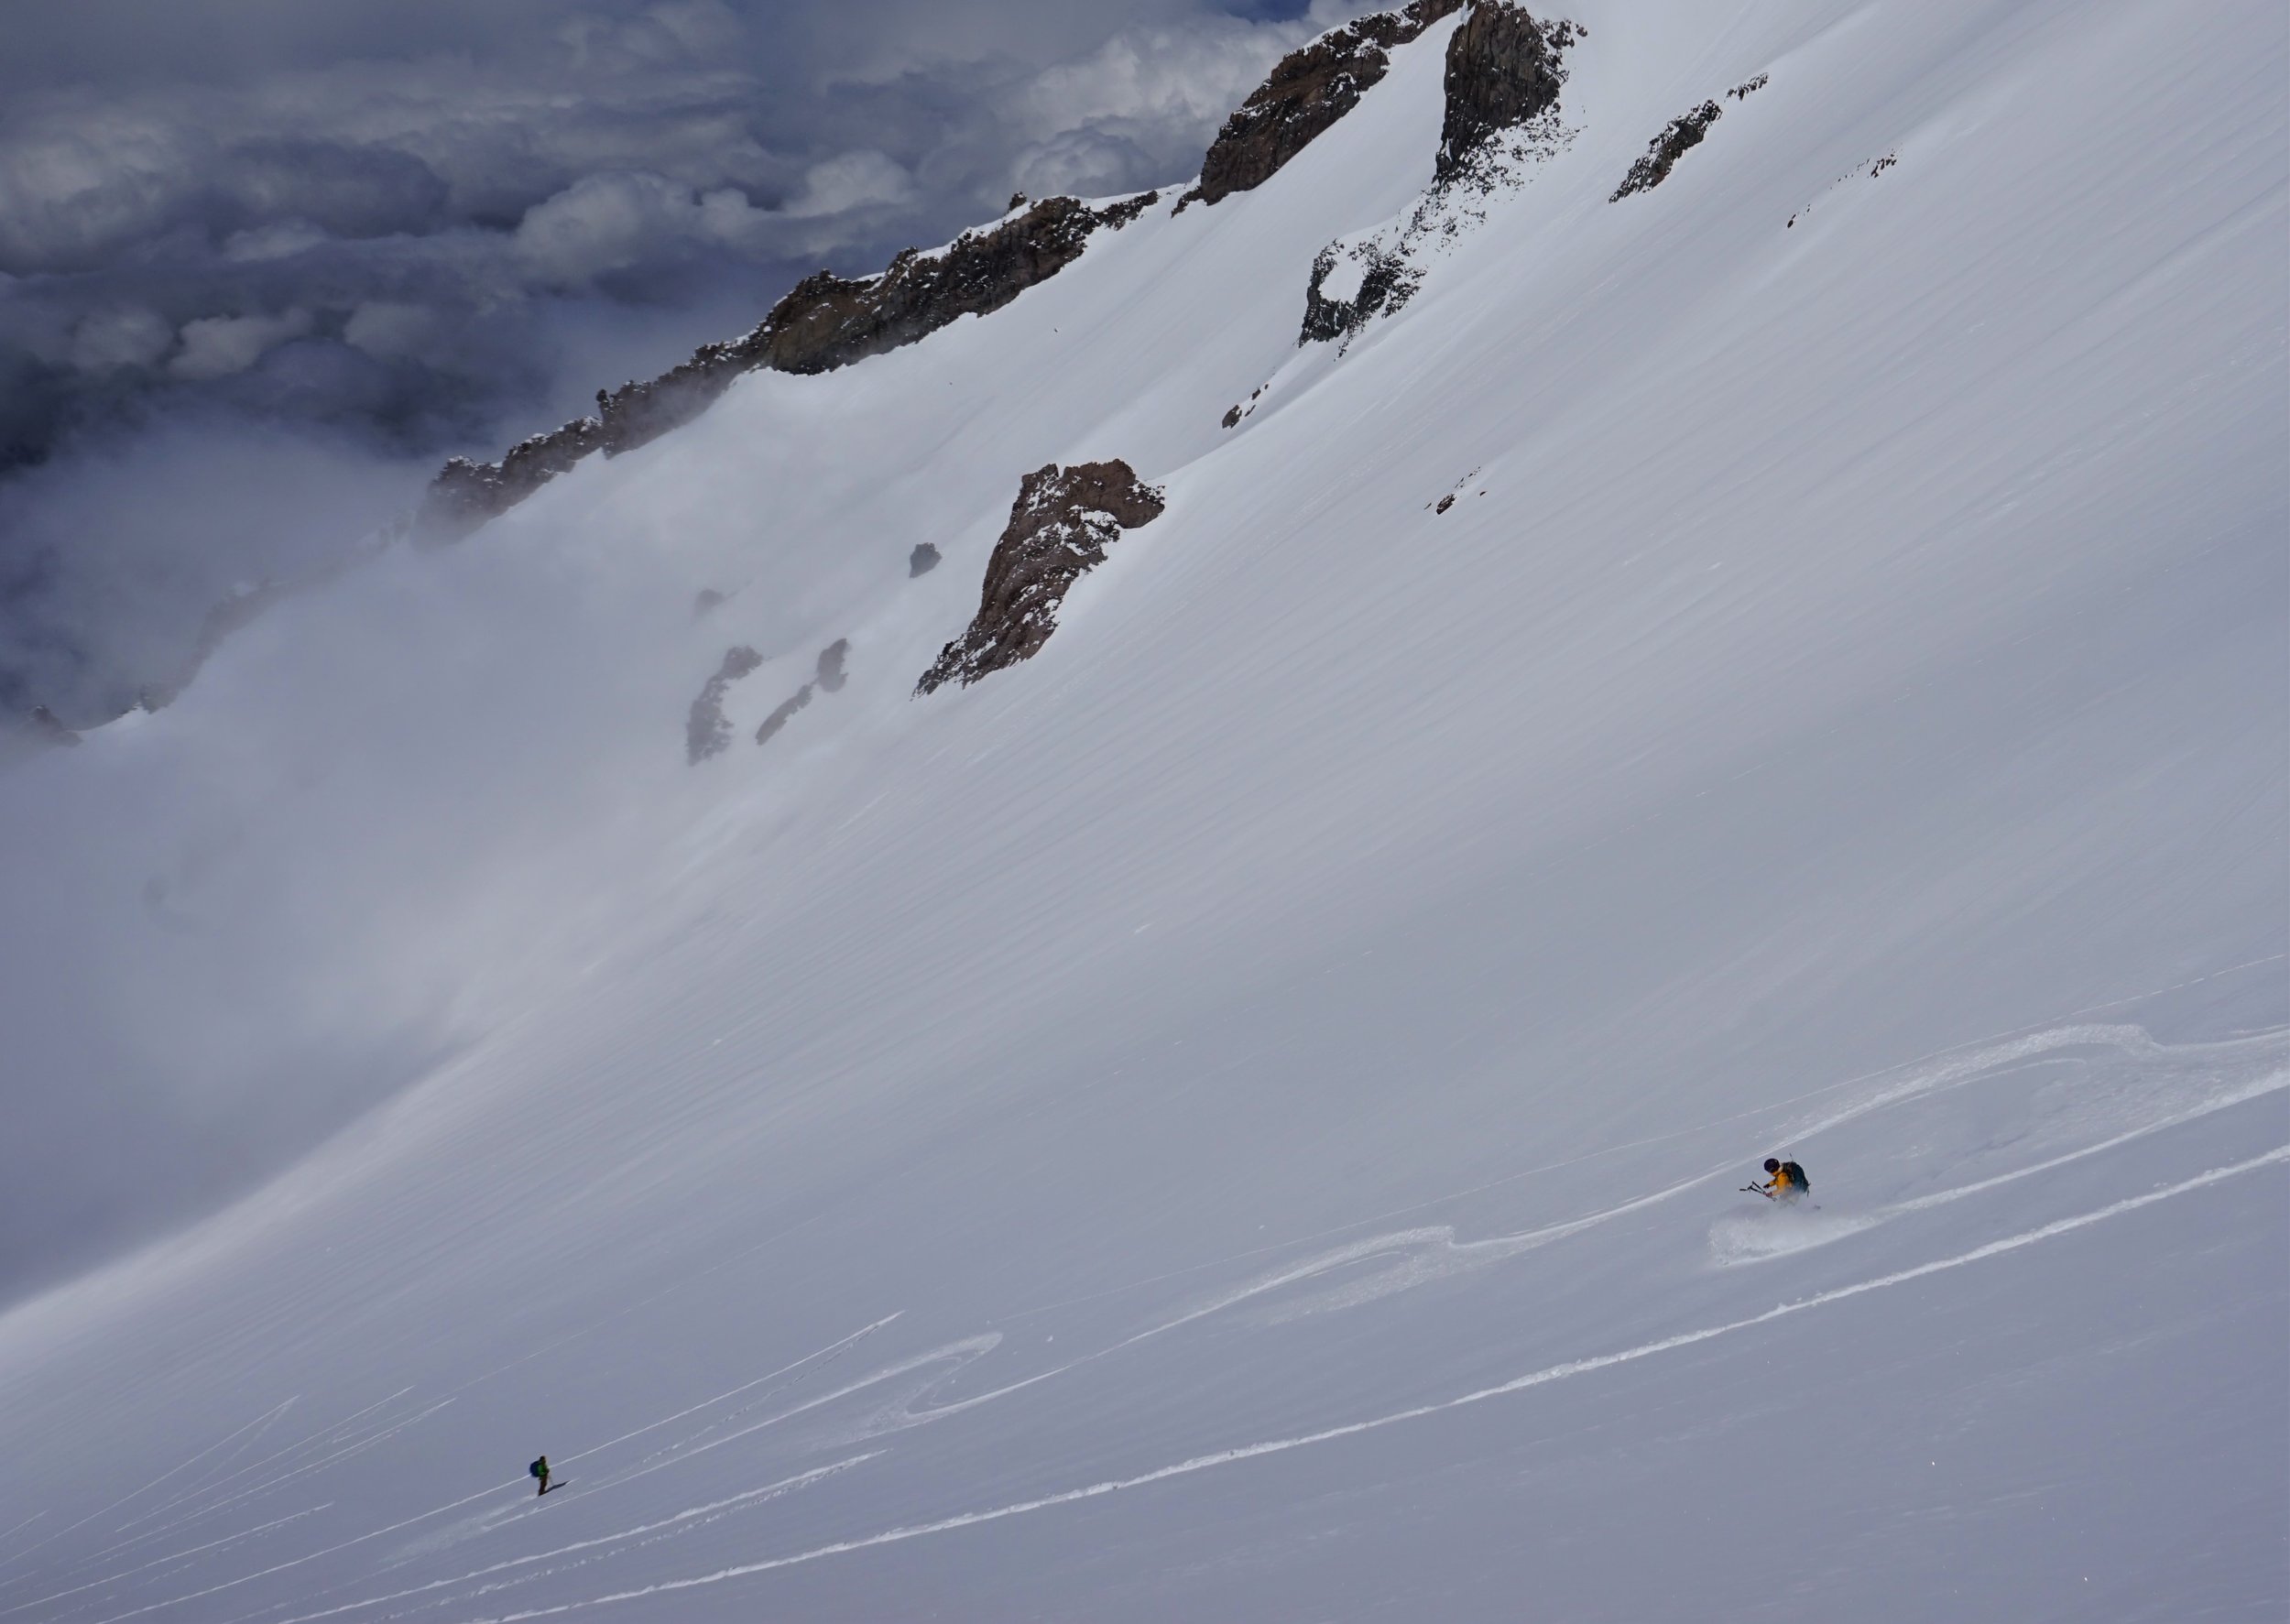 Skier ascends the slopes on mt shasta